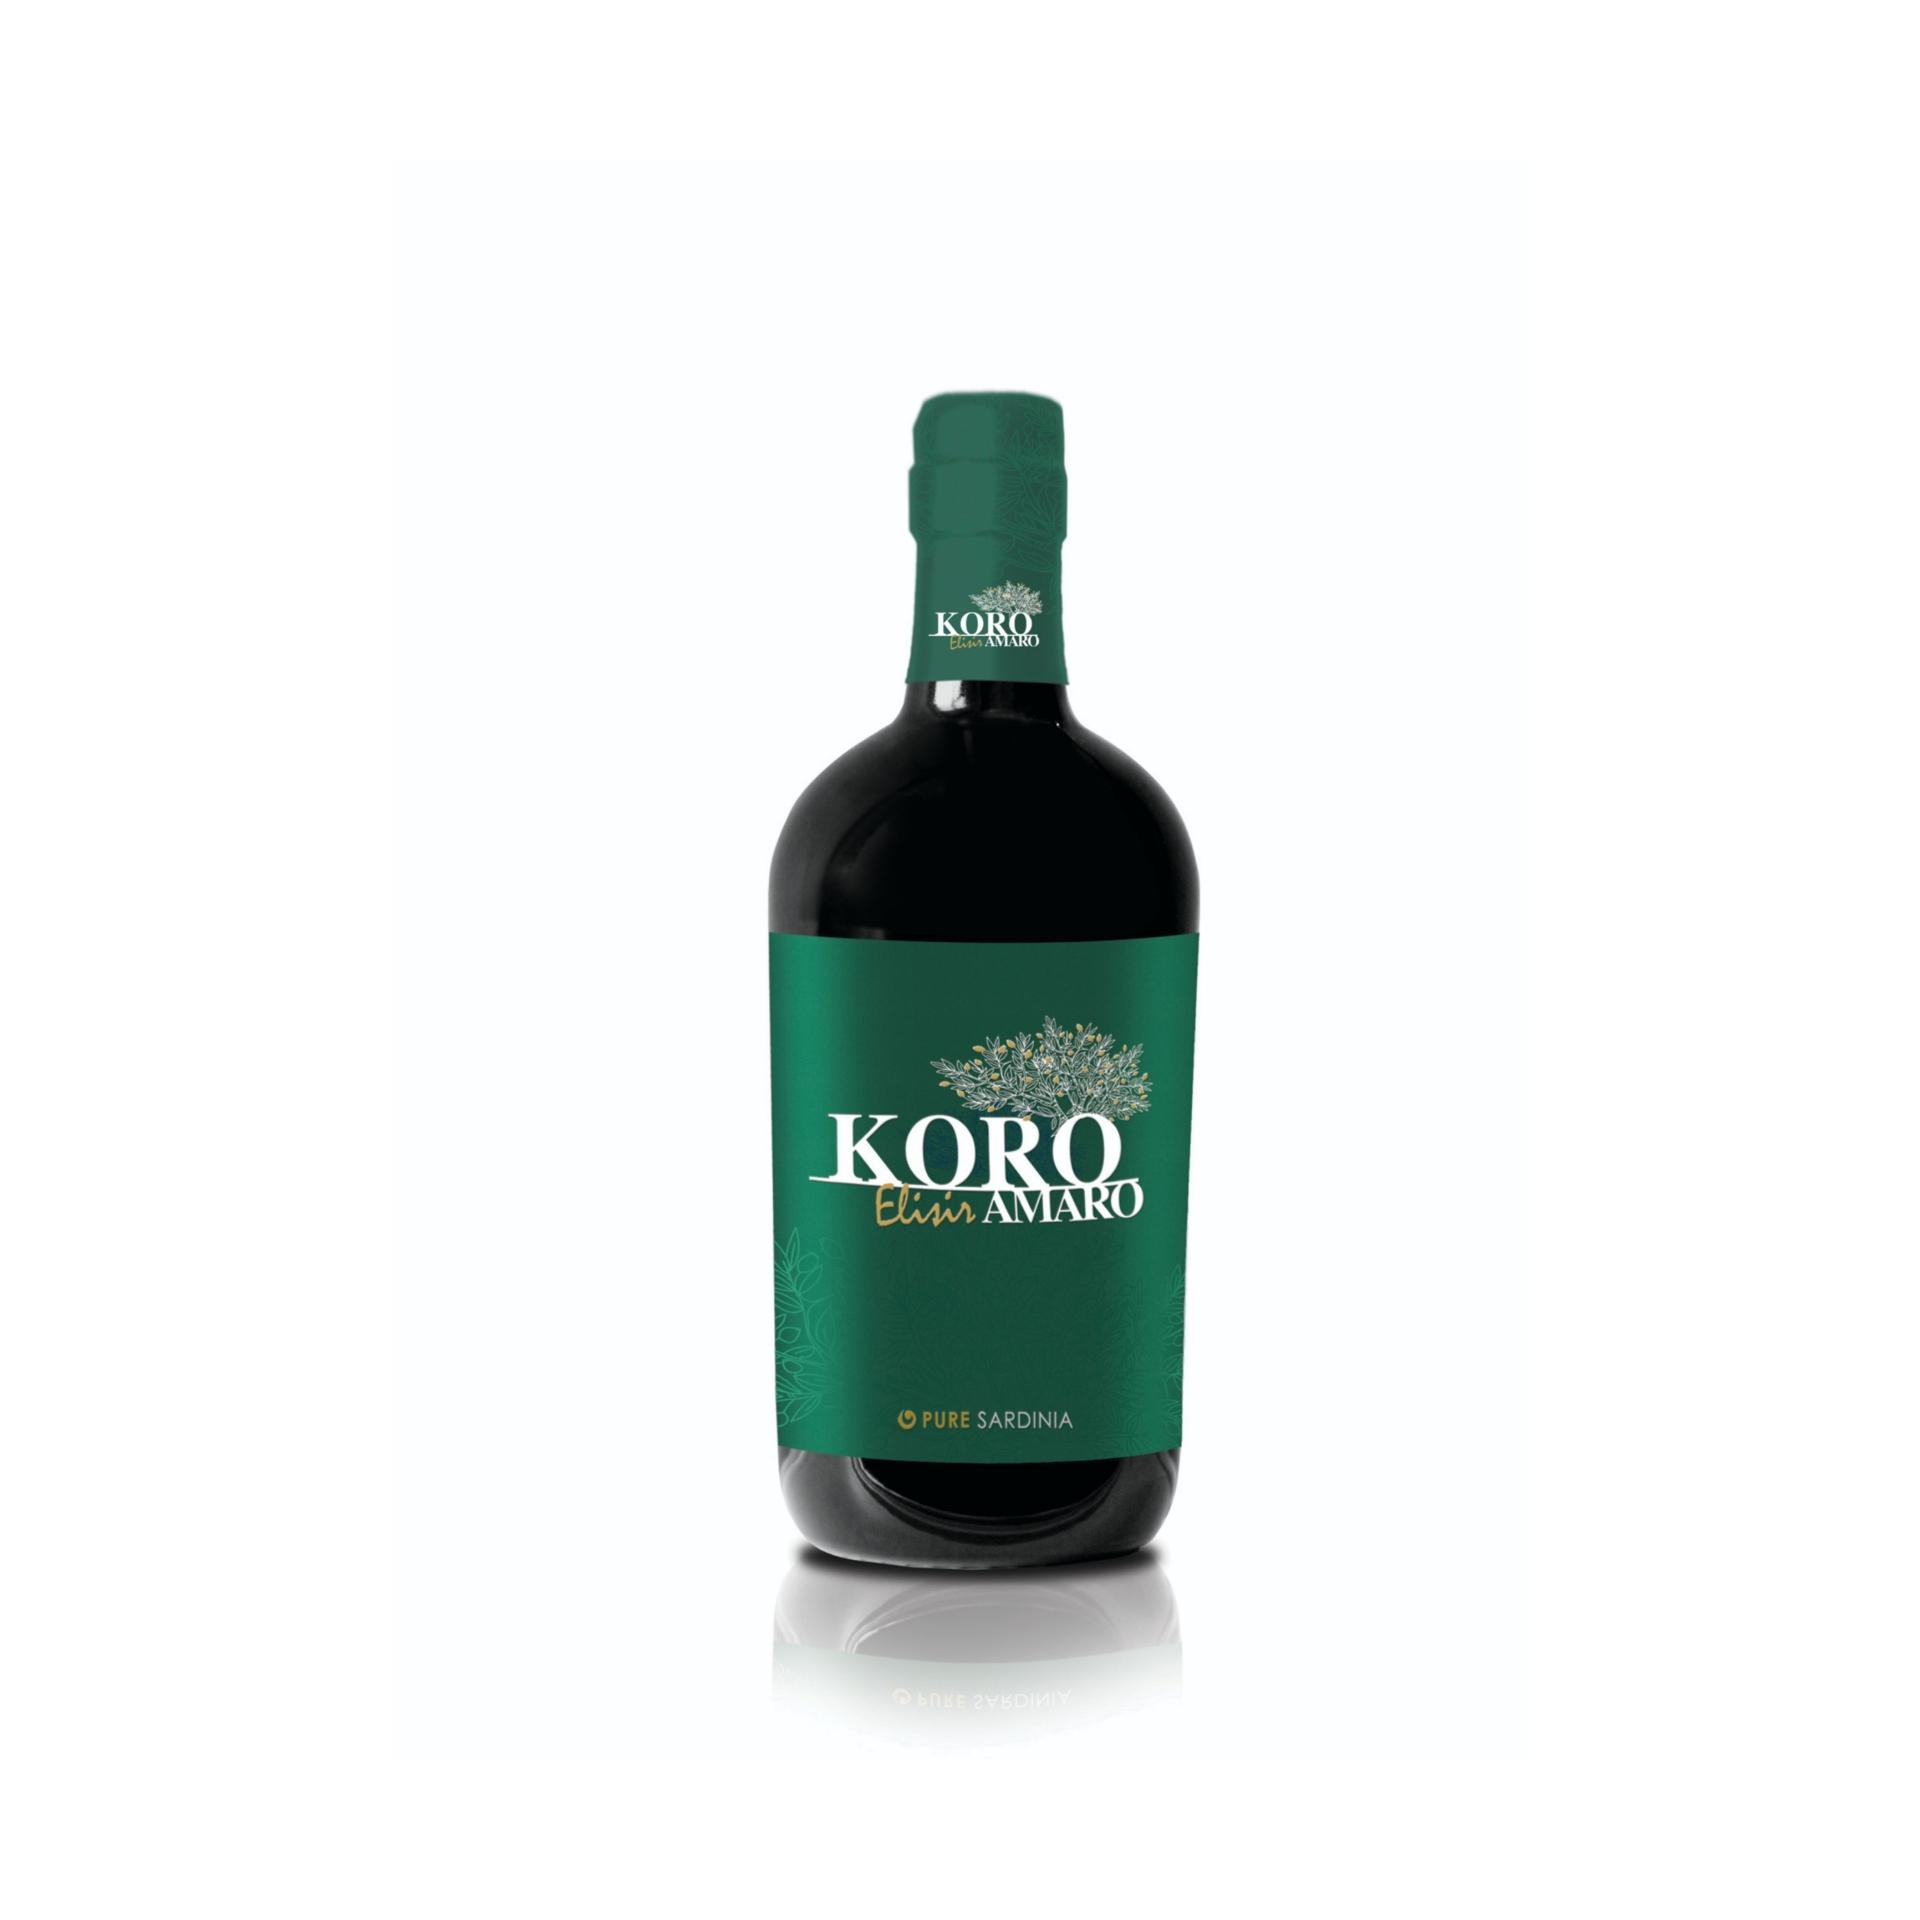 Koro Elisir Amaro Pure Sardinia 700 ml